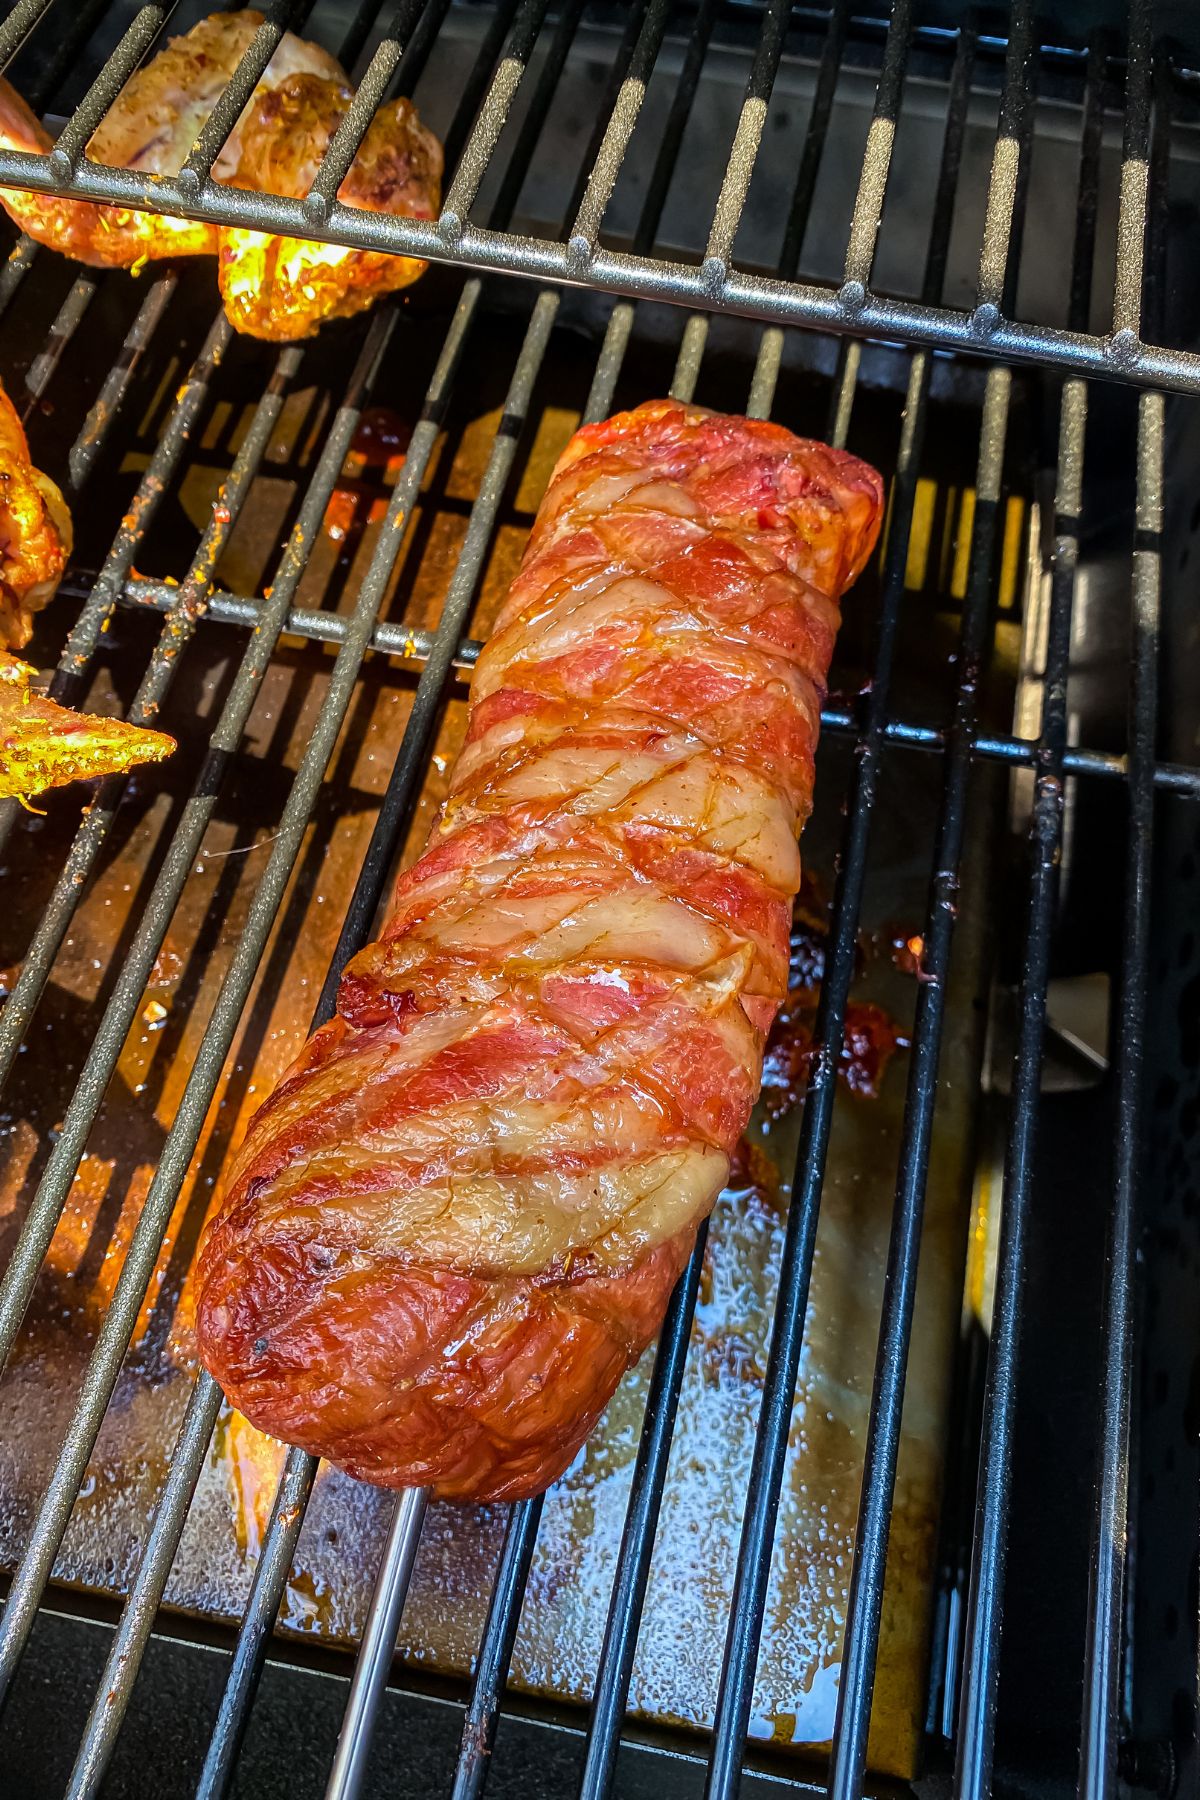 Smoked Bacon Wrapped Pork Tenderloin in the smoker